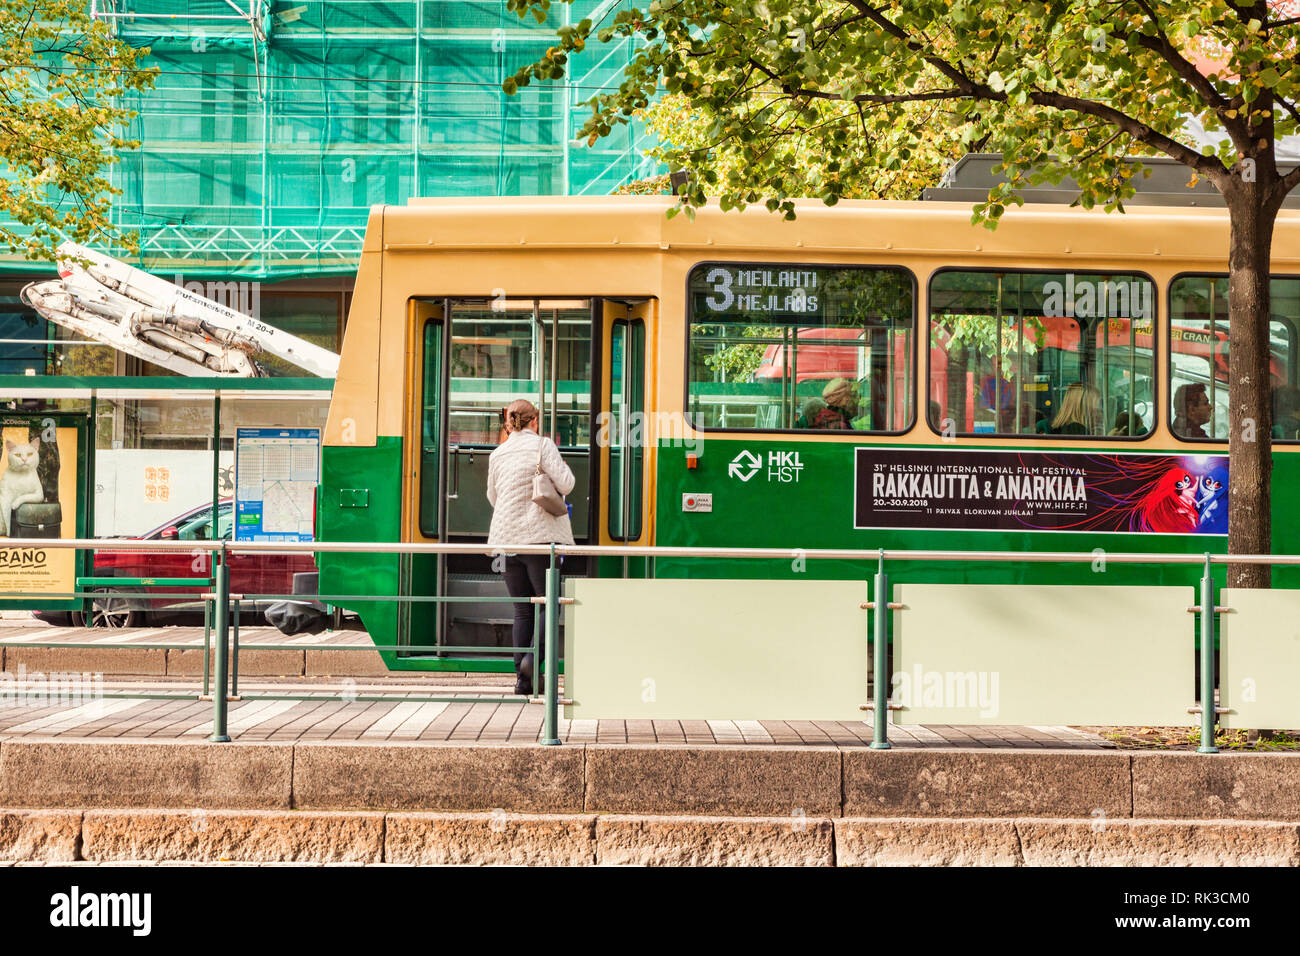 20 Septembre 2018 : Helsinki, Finlande - Femme de monter dans un tram dans la ville centrale. Banque D'Images